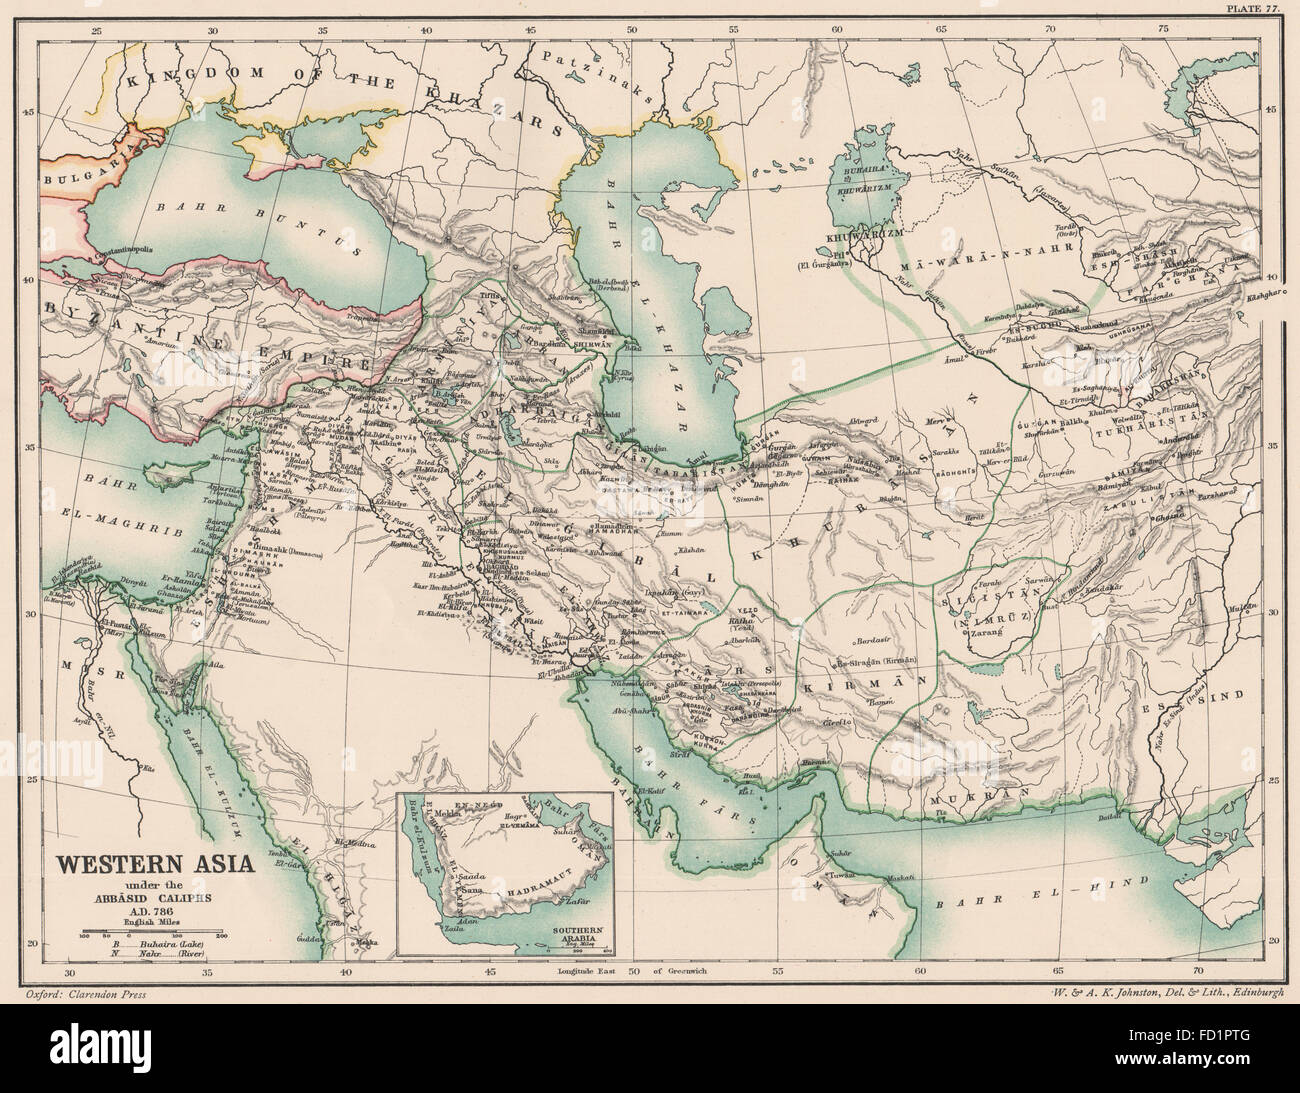 WESTLICHEN Asien IN 786 n. Chr.: unter Abbāsid abbasidischen Kalifen, 1902 Antike Landkarte Stockfoto